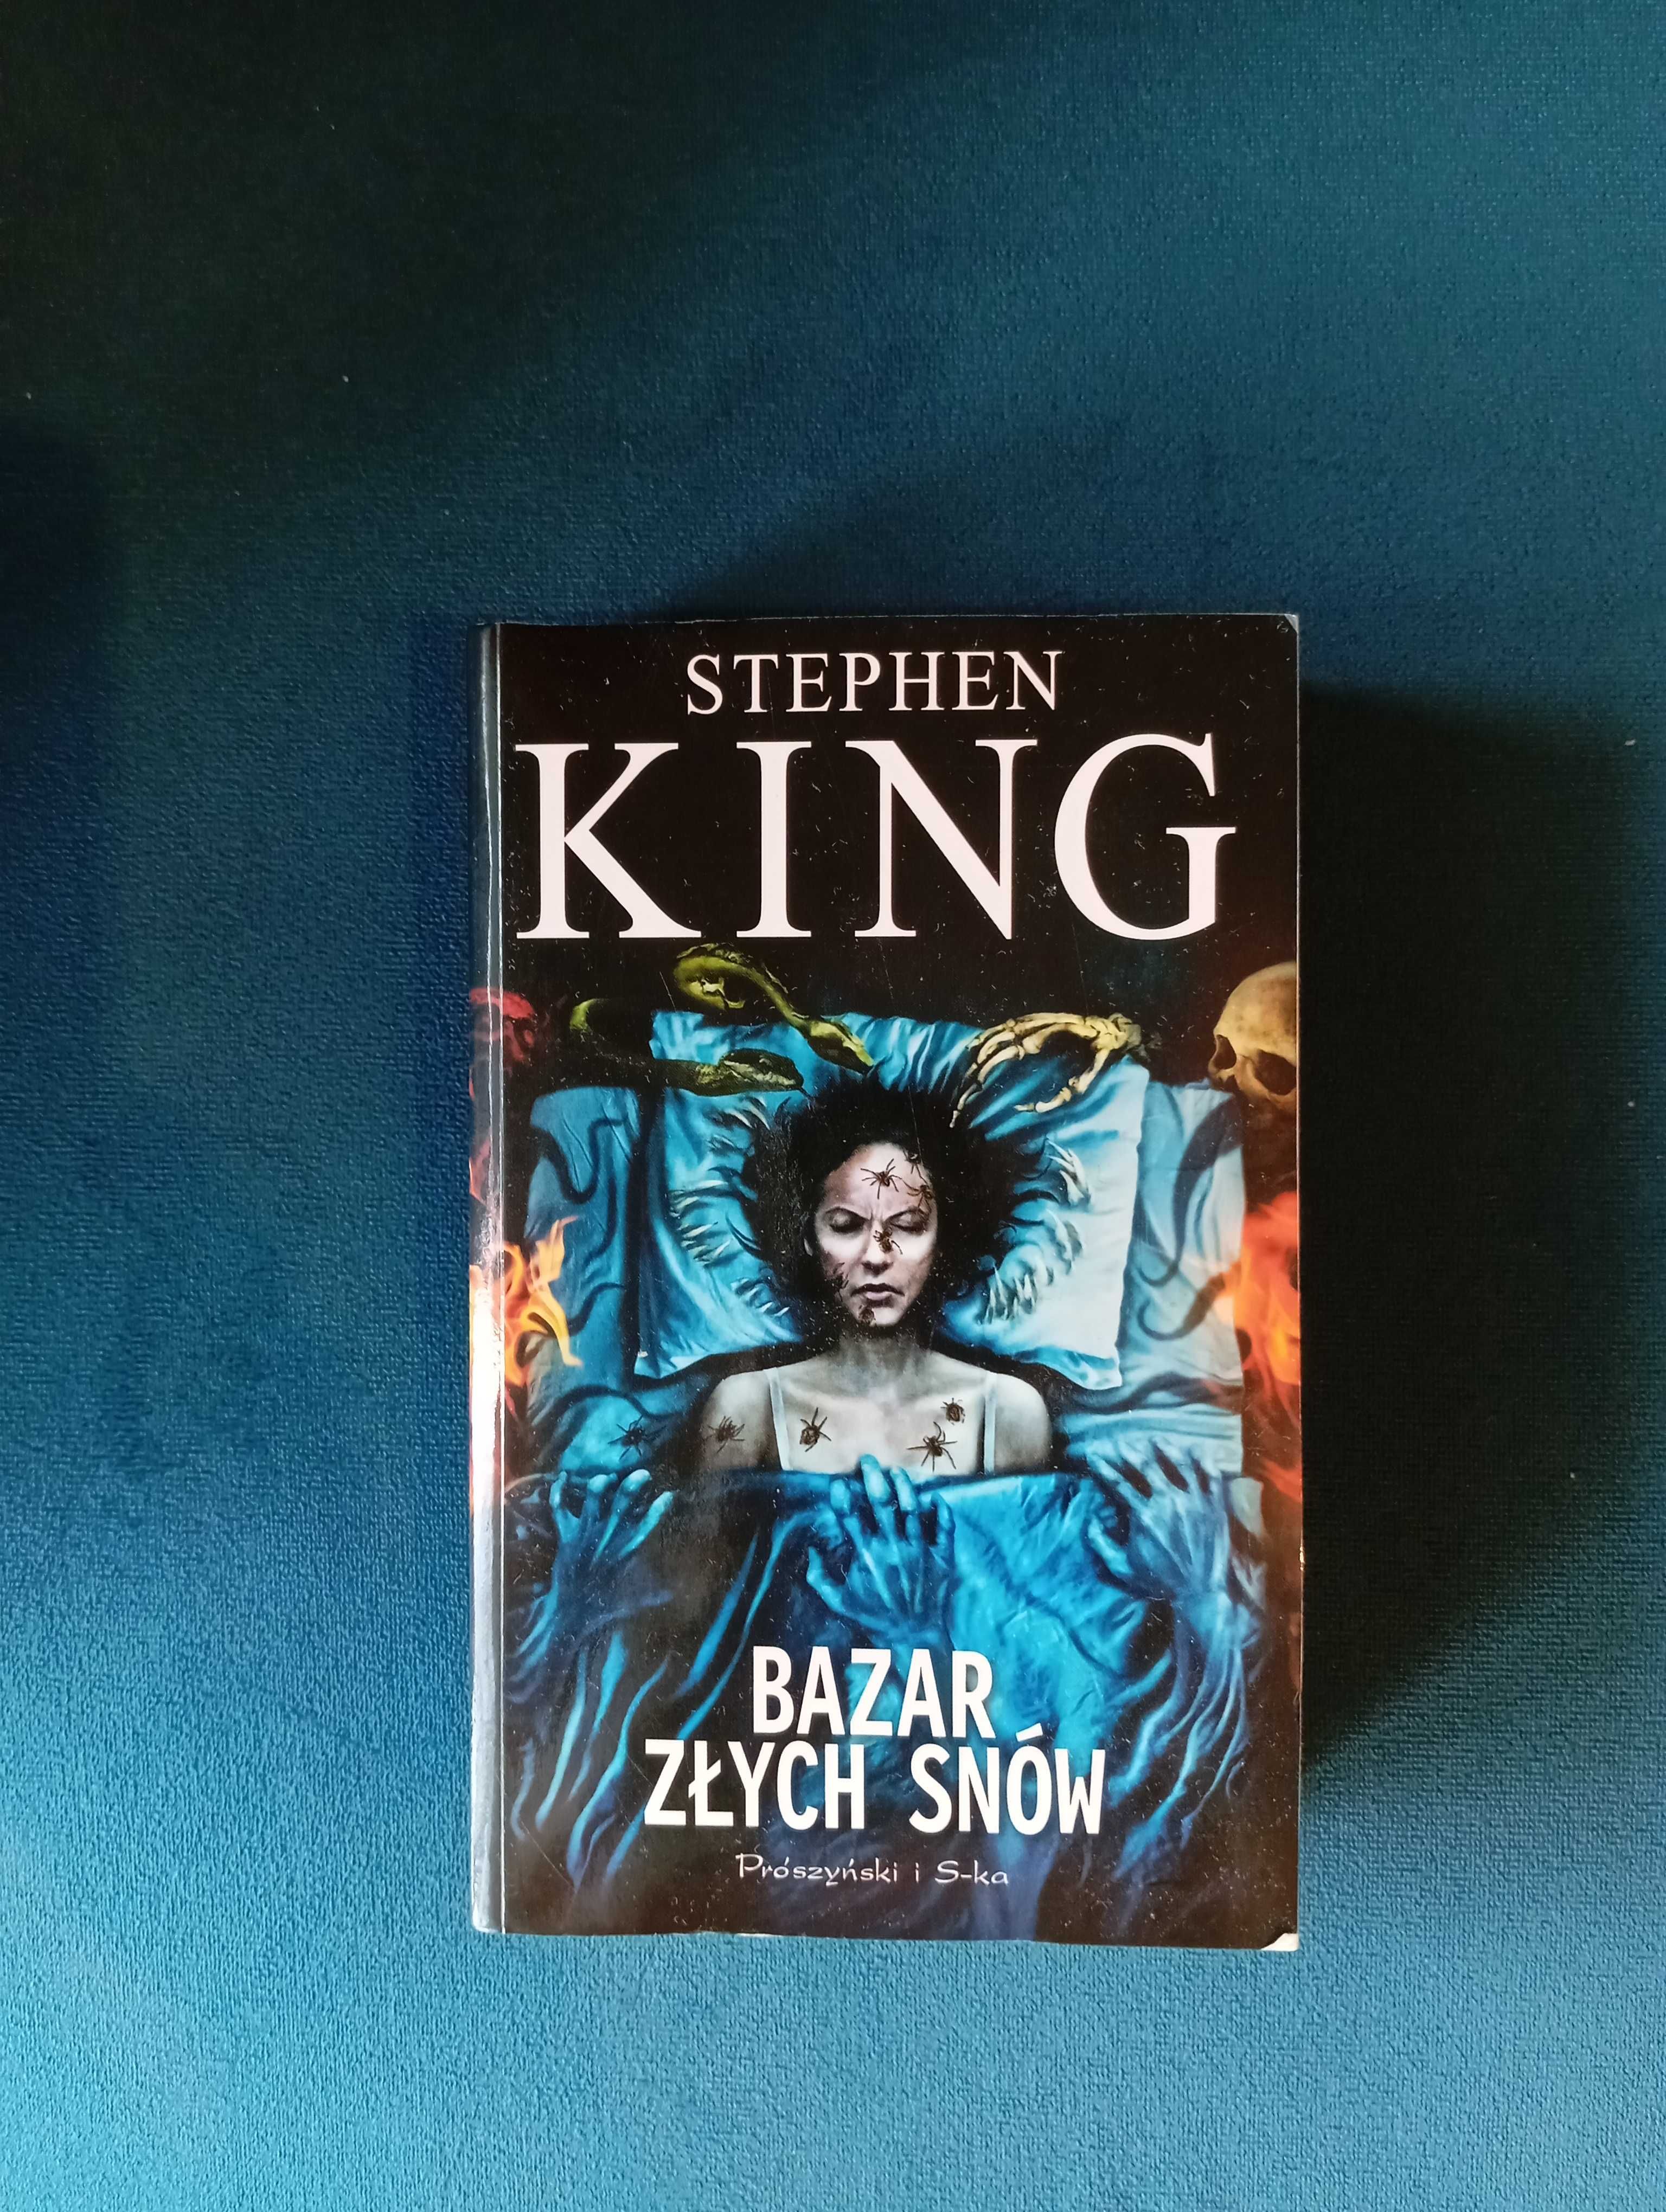 Stephen King "Bazar złych snów"